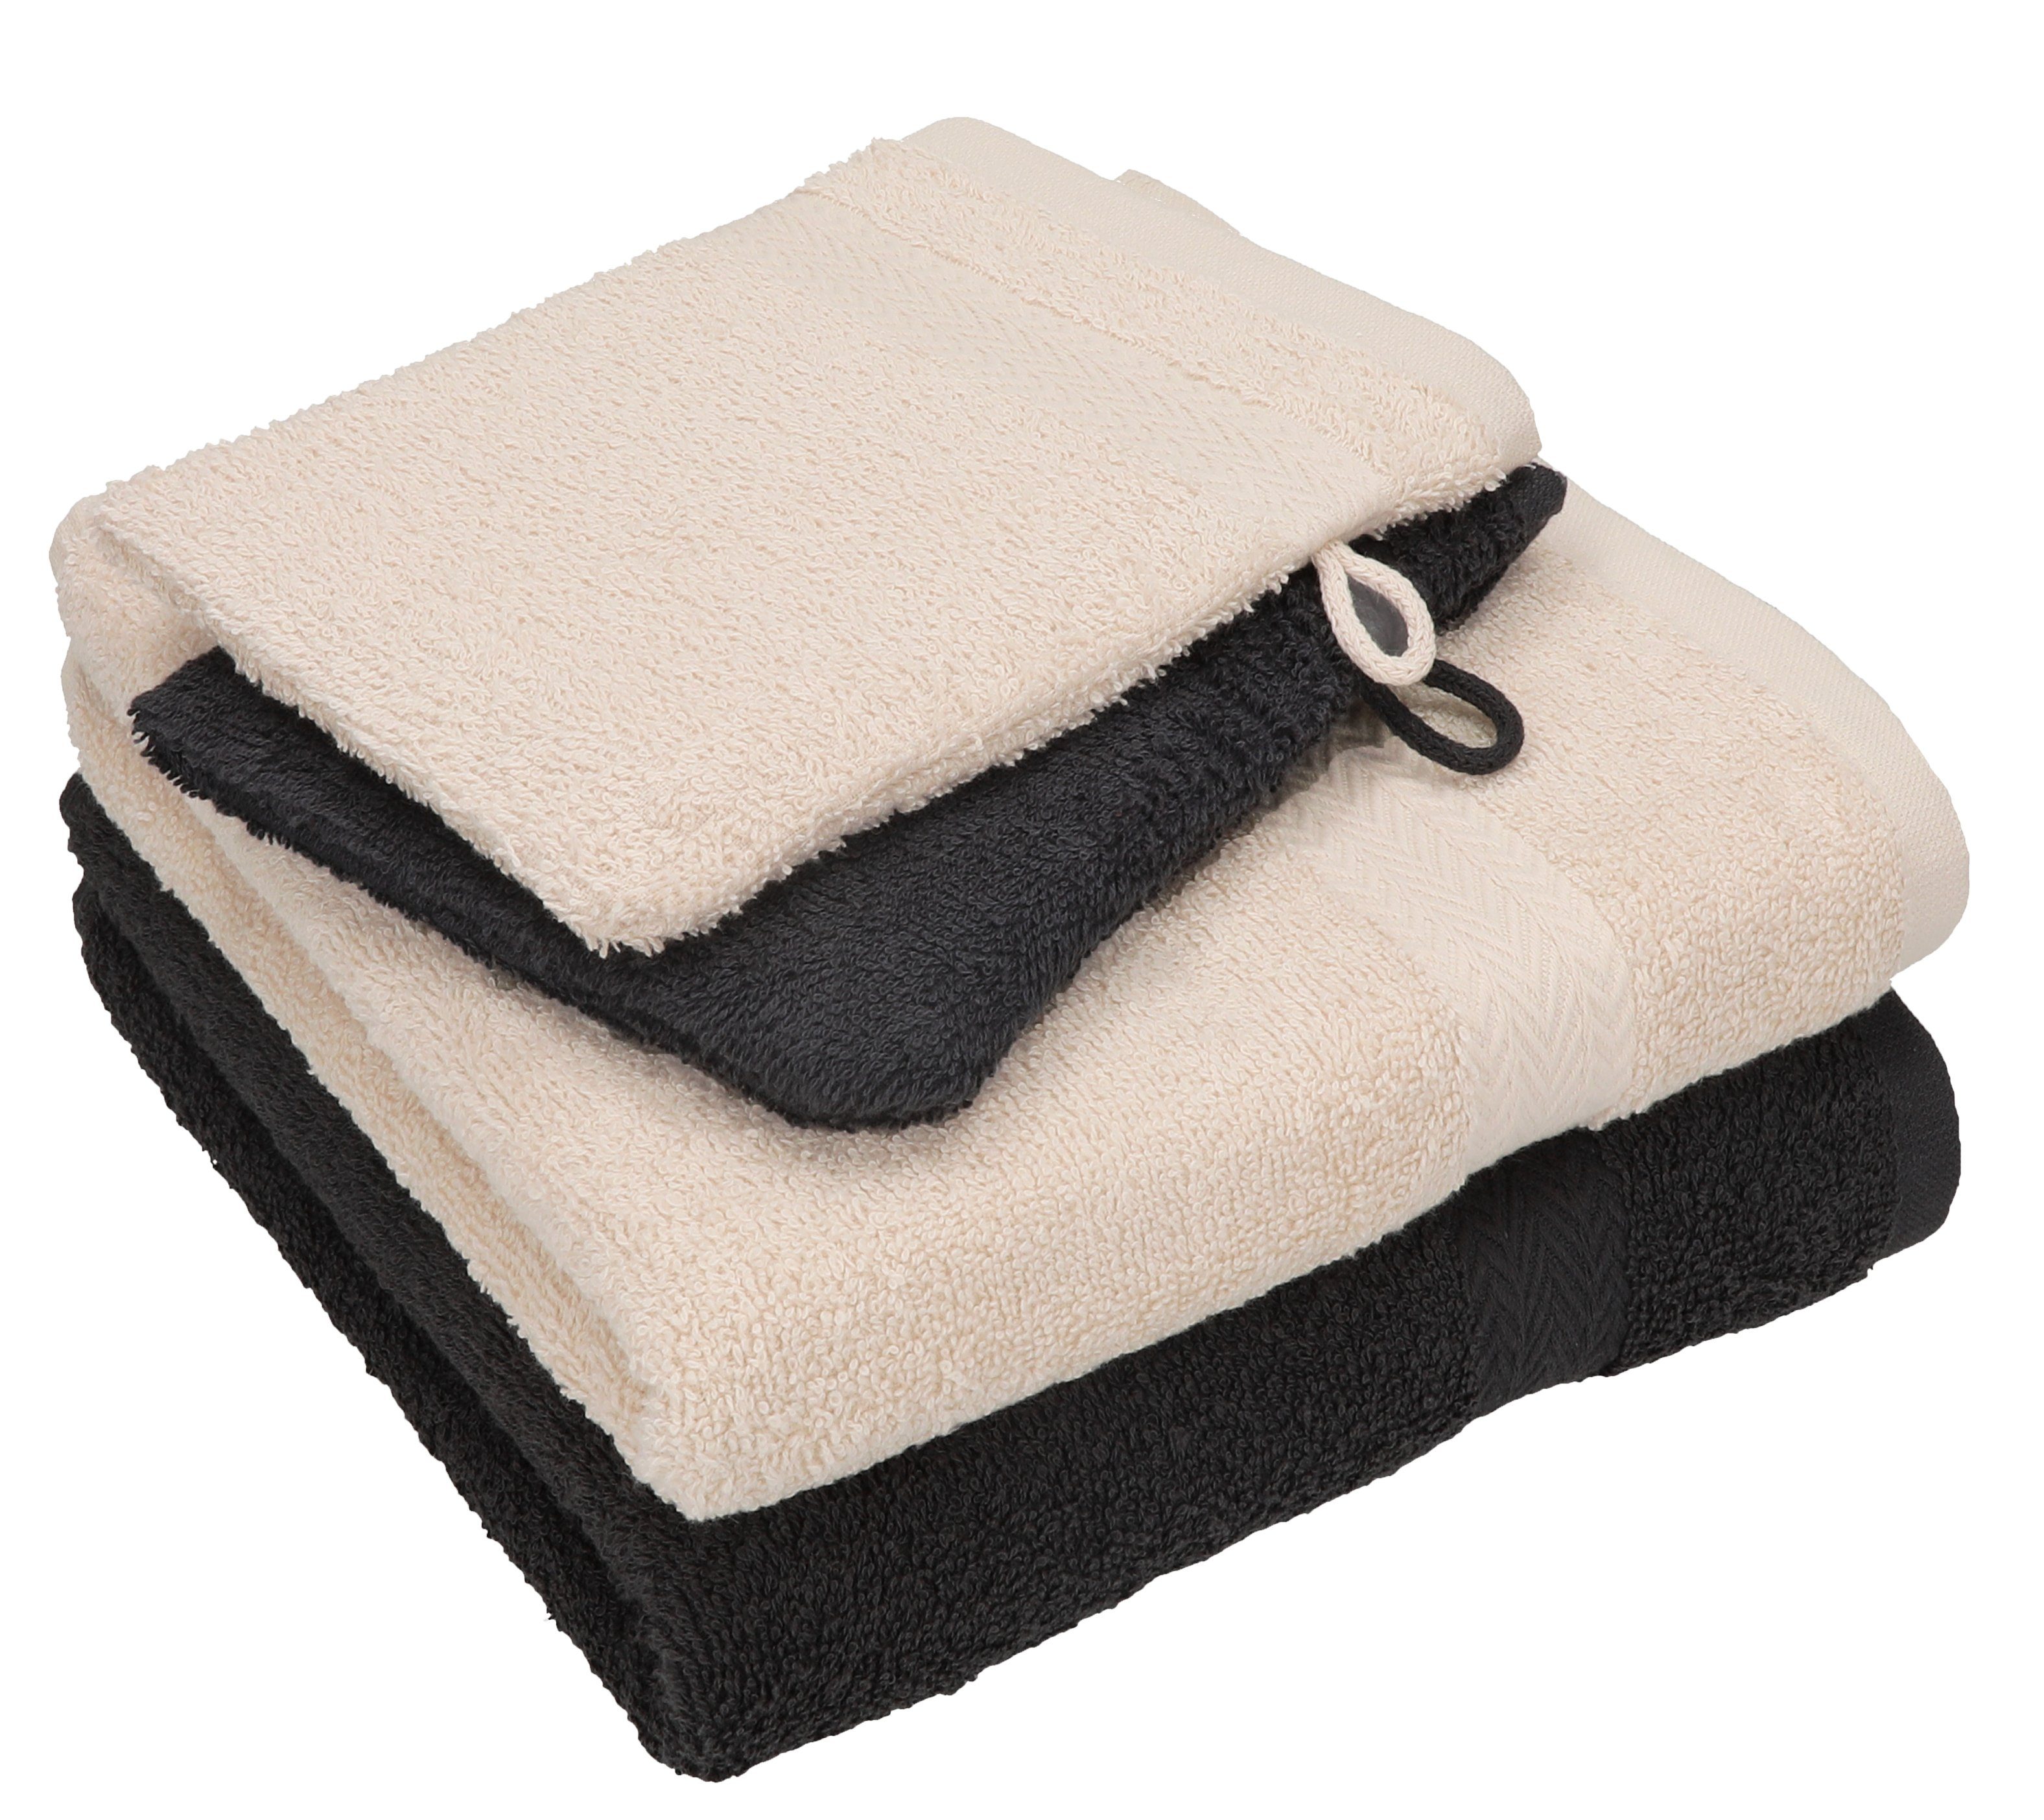 Betz Handtuch Set 4 tlg. Handtuch Set HAPPY Pack 100% Baumwolle 2 Handtücher 2 Waschhandschuhe, 100% Baumwolle graphit grau - sand